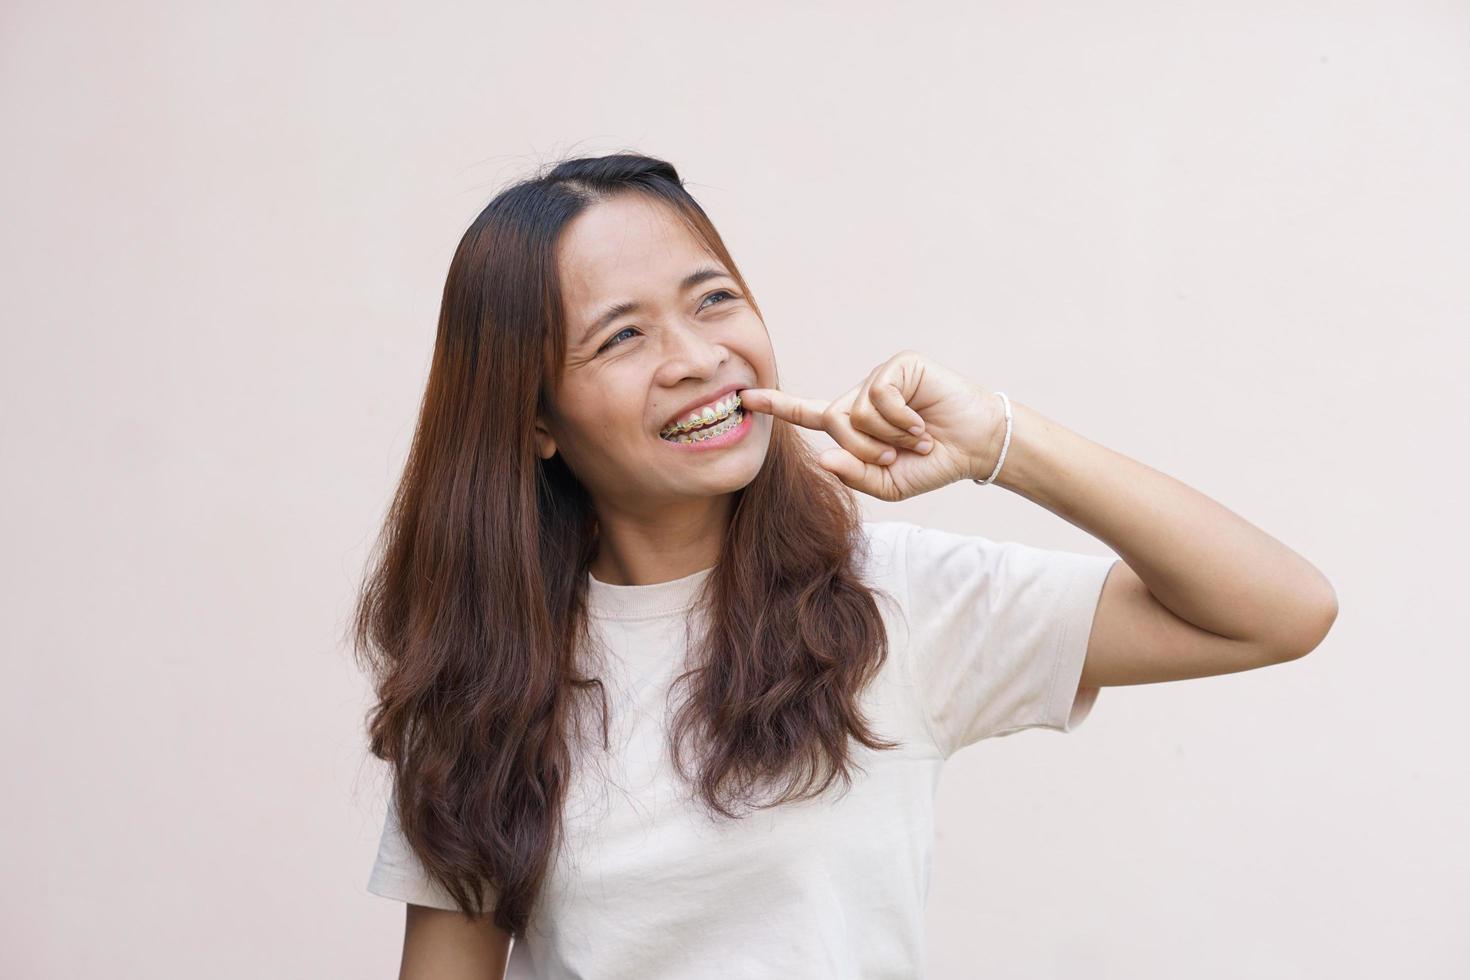 las mujeres asiáticas tienen dolor y sensibilidad en los dientes. foto